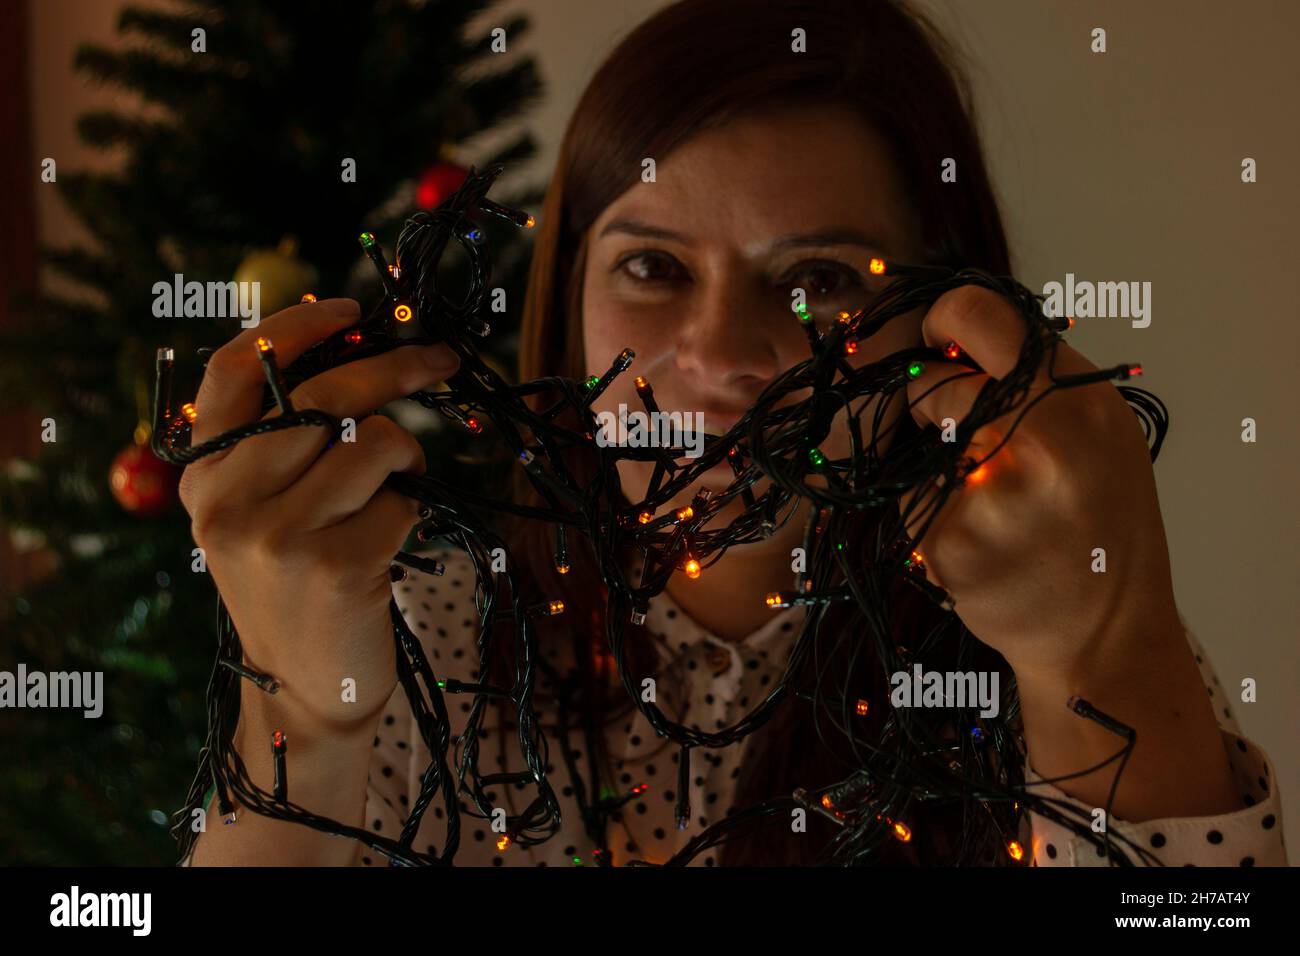 Nahaufnahme des Gesichts einer lächelnden Frau, die mit roten, grünen und blauen Lichtern spielt, um den Weihnachtsbaum in ihren Händen zu schmücken Stockfoto